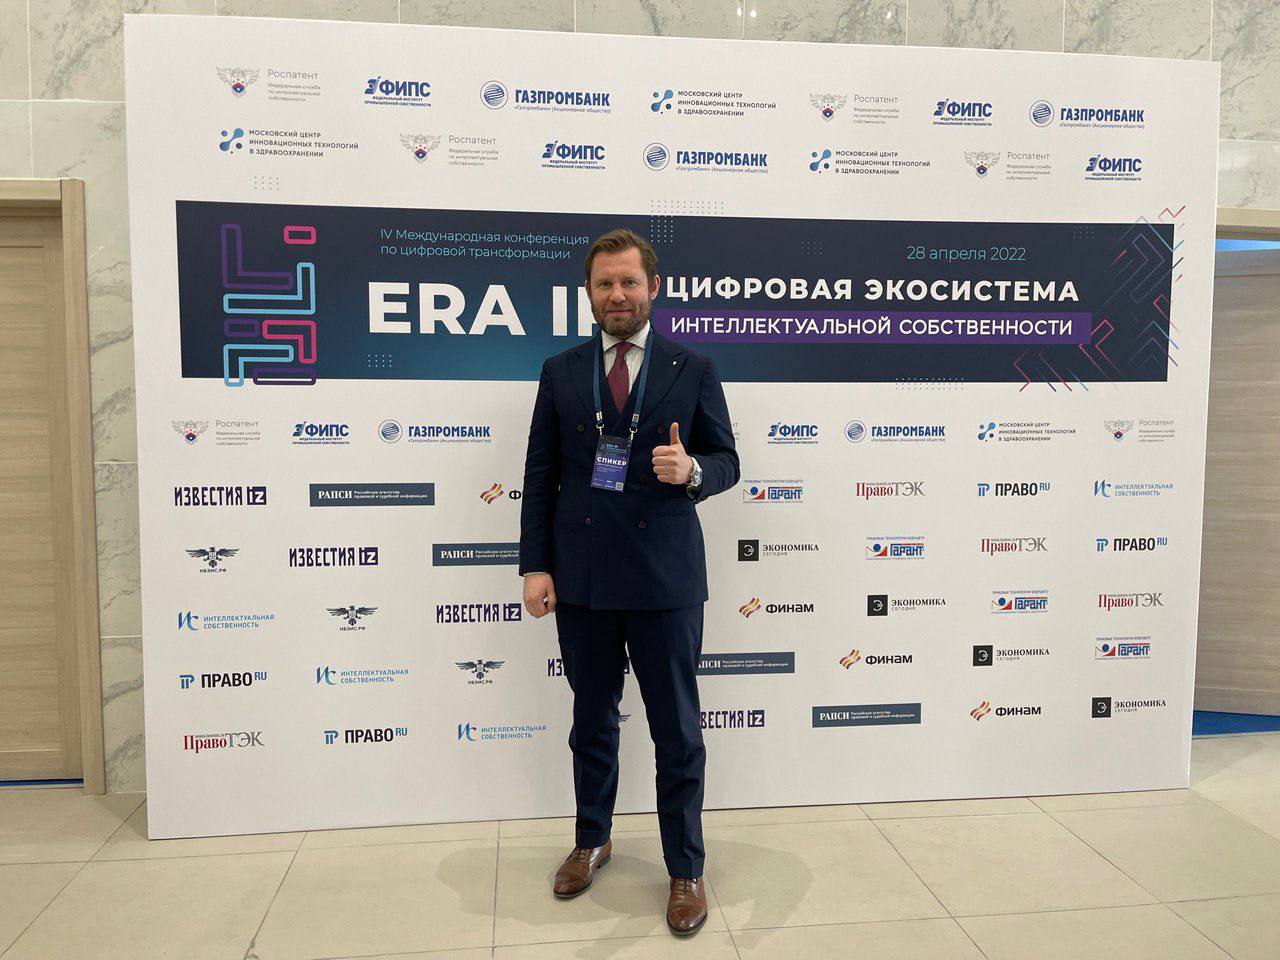 Дмитрий Марканов выступил на Конференции по цифровой трансформации: «ERA IP: Цифровая экосистема интеллектуальной собственности»